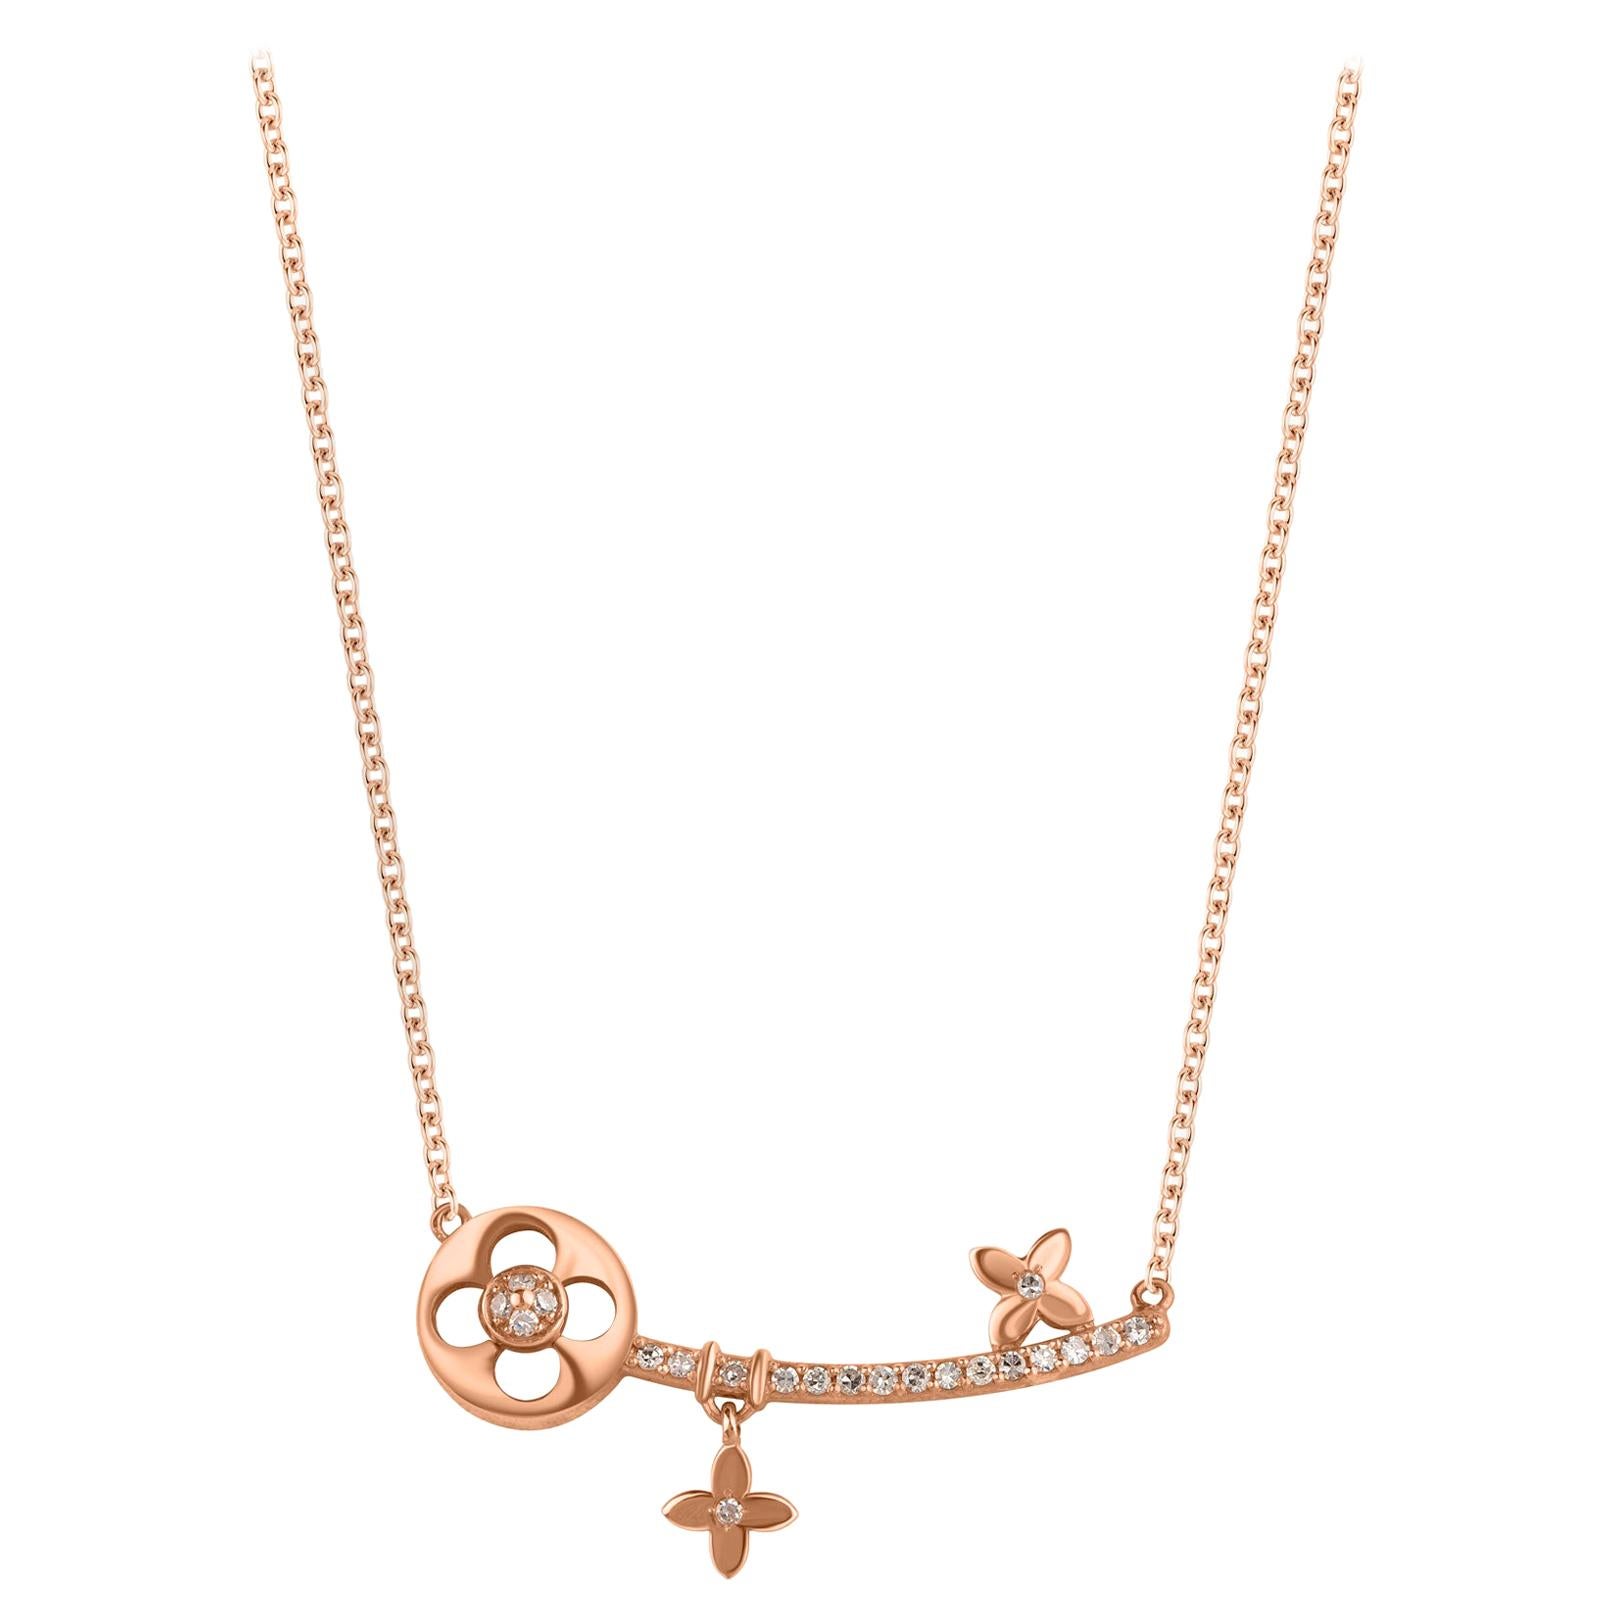 TJD 0.15Carat Diamond 18 Karat Rose Gold Flowery Key Necklace with 18 inch Chain (Collier de clés fleuries en or rose 18 carats avec chaîne de 18 pouces) en vente